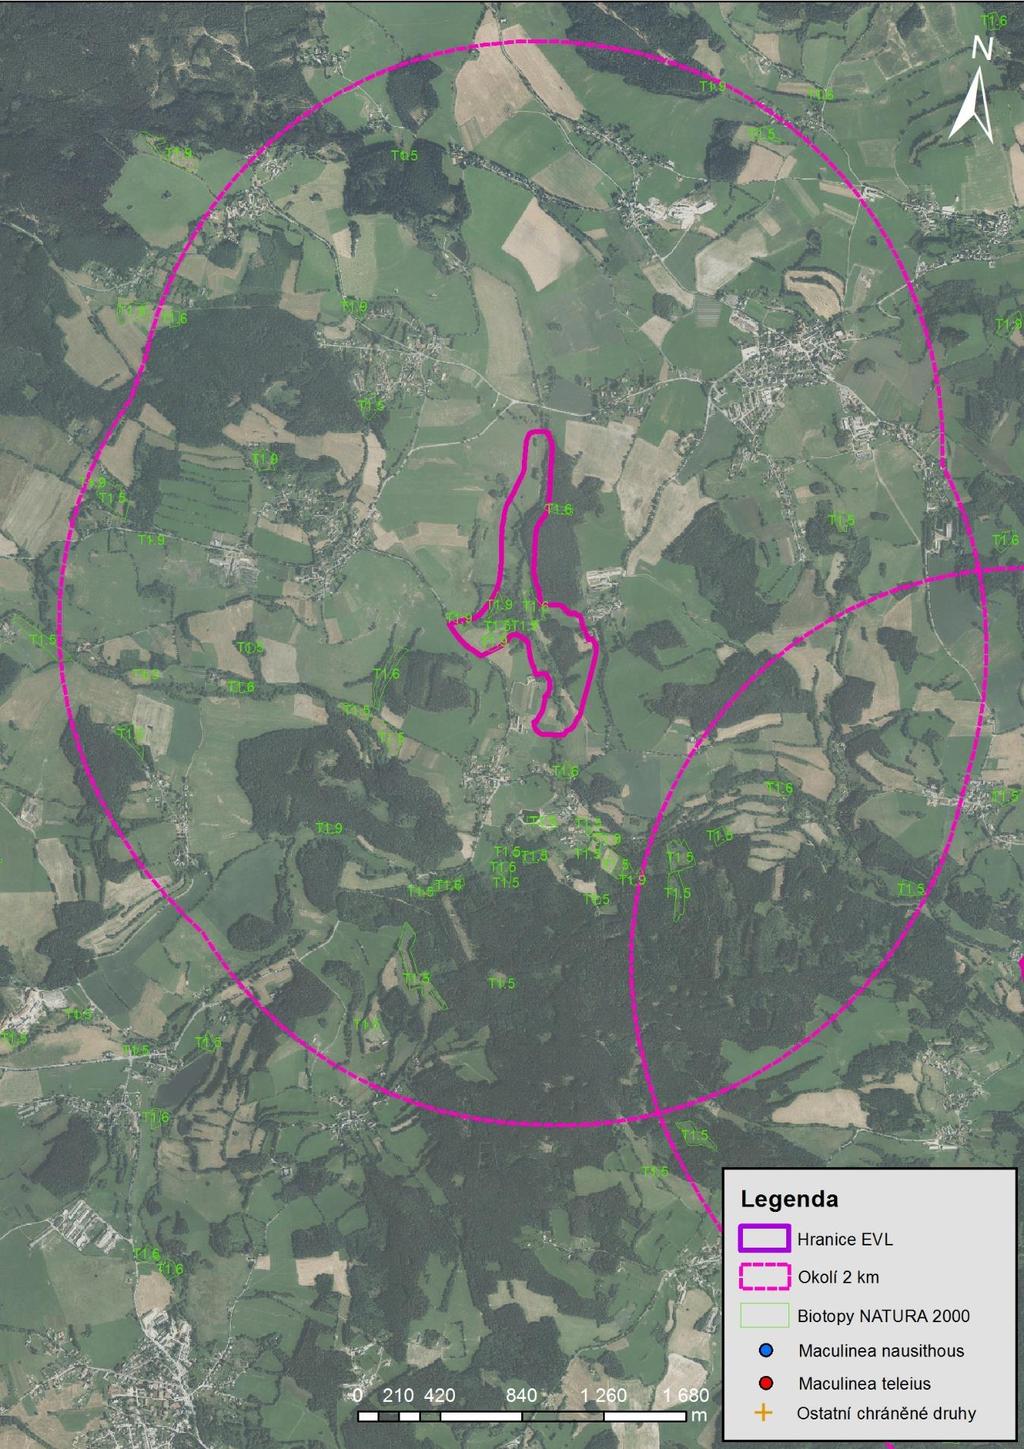 Mapa 13 EVL Čábuze a okolí 2 km. Znázorněna je hranice EVL, okolí 2 km, naturové biotopy T1.4, T1.5, T1.6, T1.